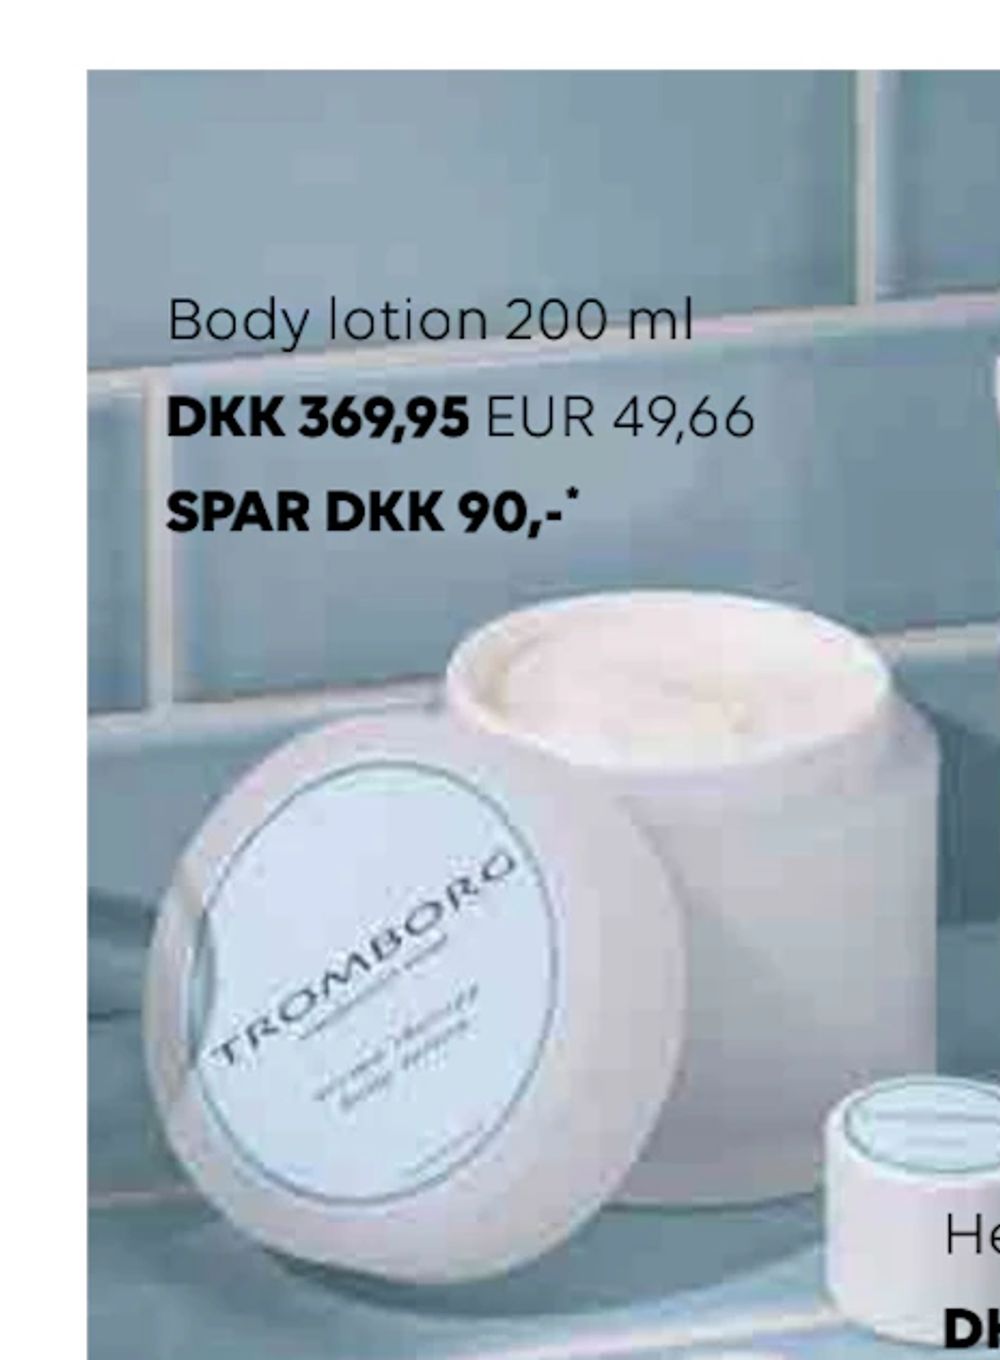 Tilbud på Body lotion 200 ml fra Scandlines Travel Shop til 369,95 kr.